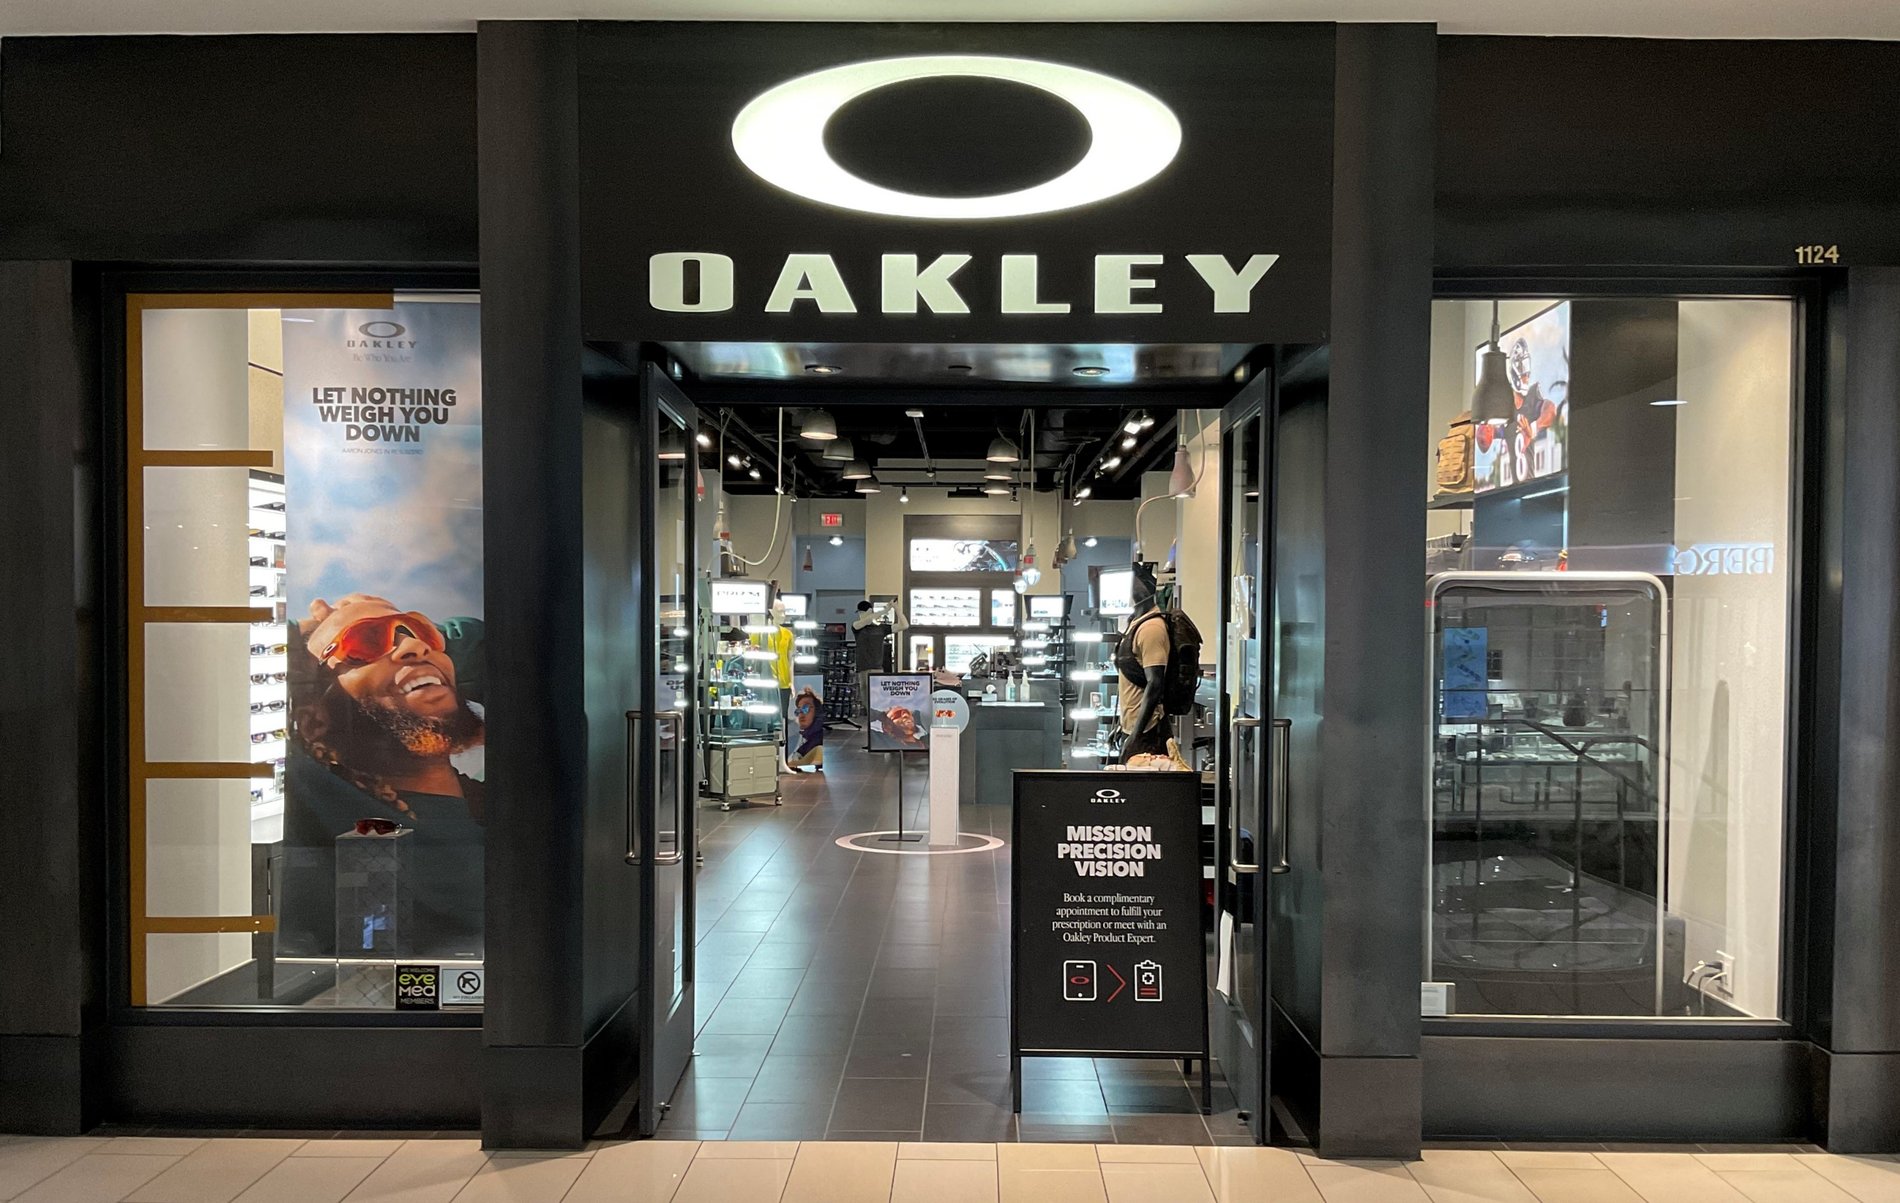 Oakley Store, 1 Walden Galleria Buffalo, NY  Men's and Women's Sunglasses,  Goggles, & Apparel